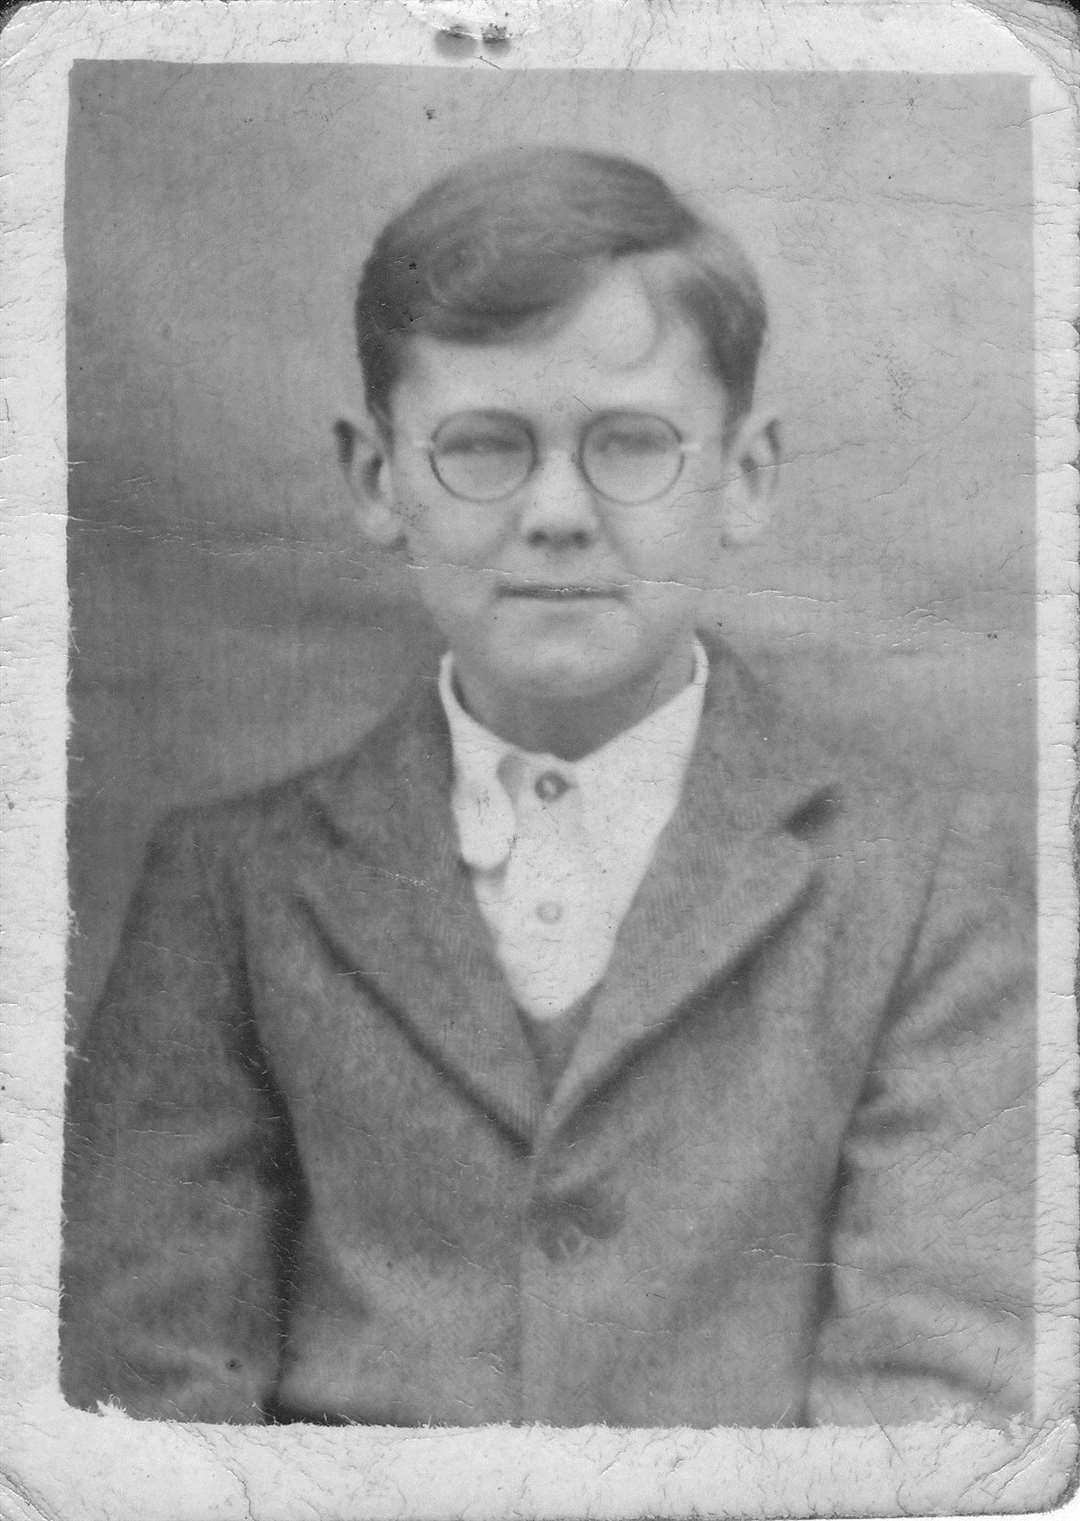 John Hawker as a boy